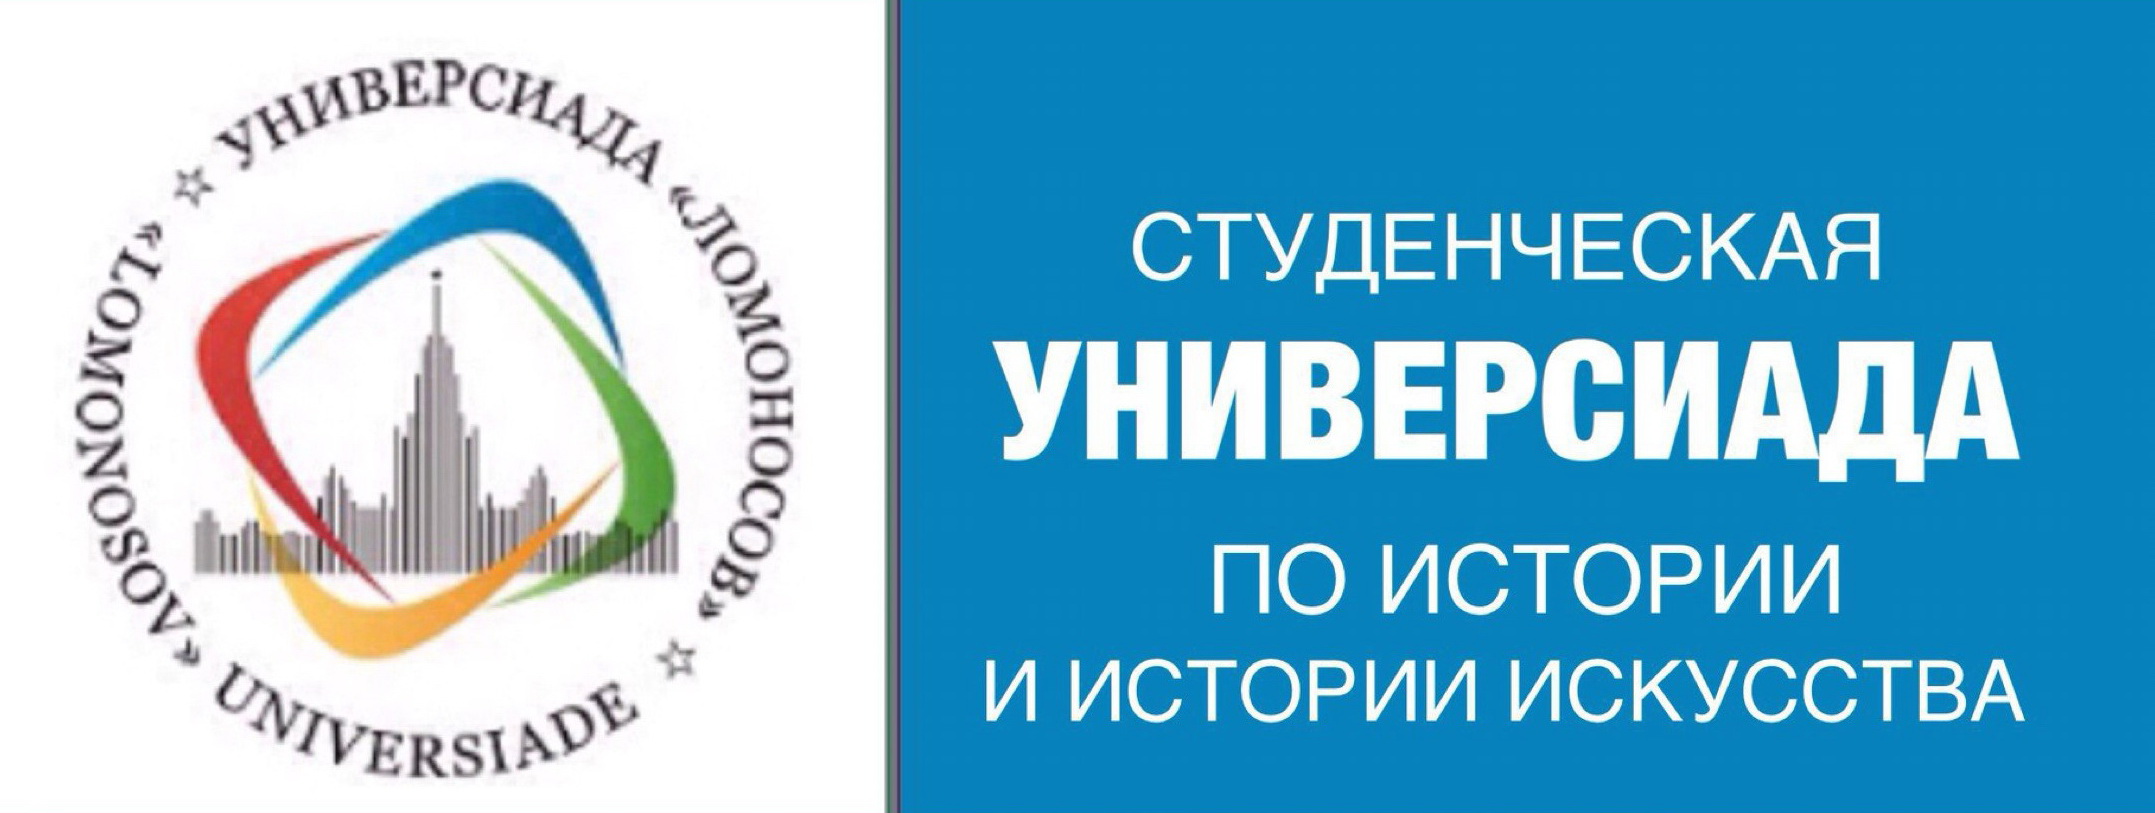 Награждение победителей и призёров Универсиады "Ломоносов", состоявшейся в 2018-2019 учебном году, по истории и истории искусства